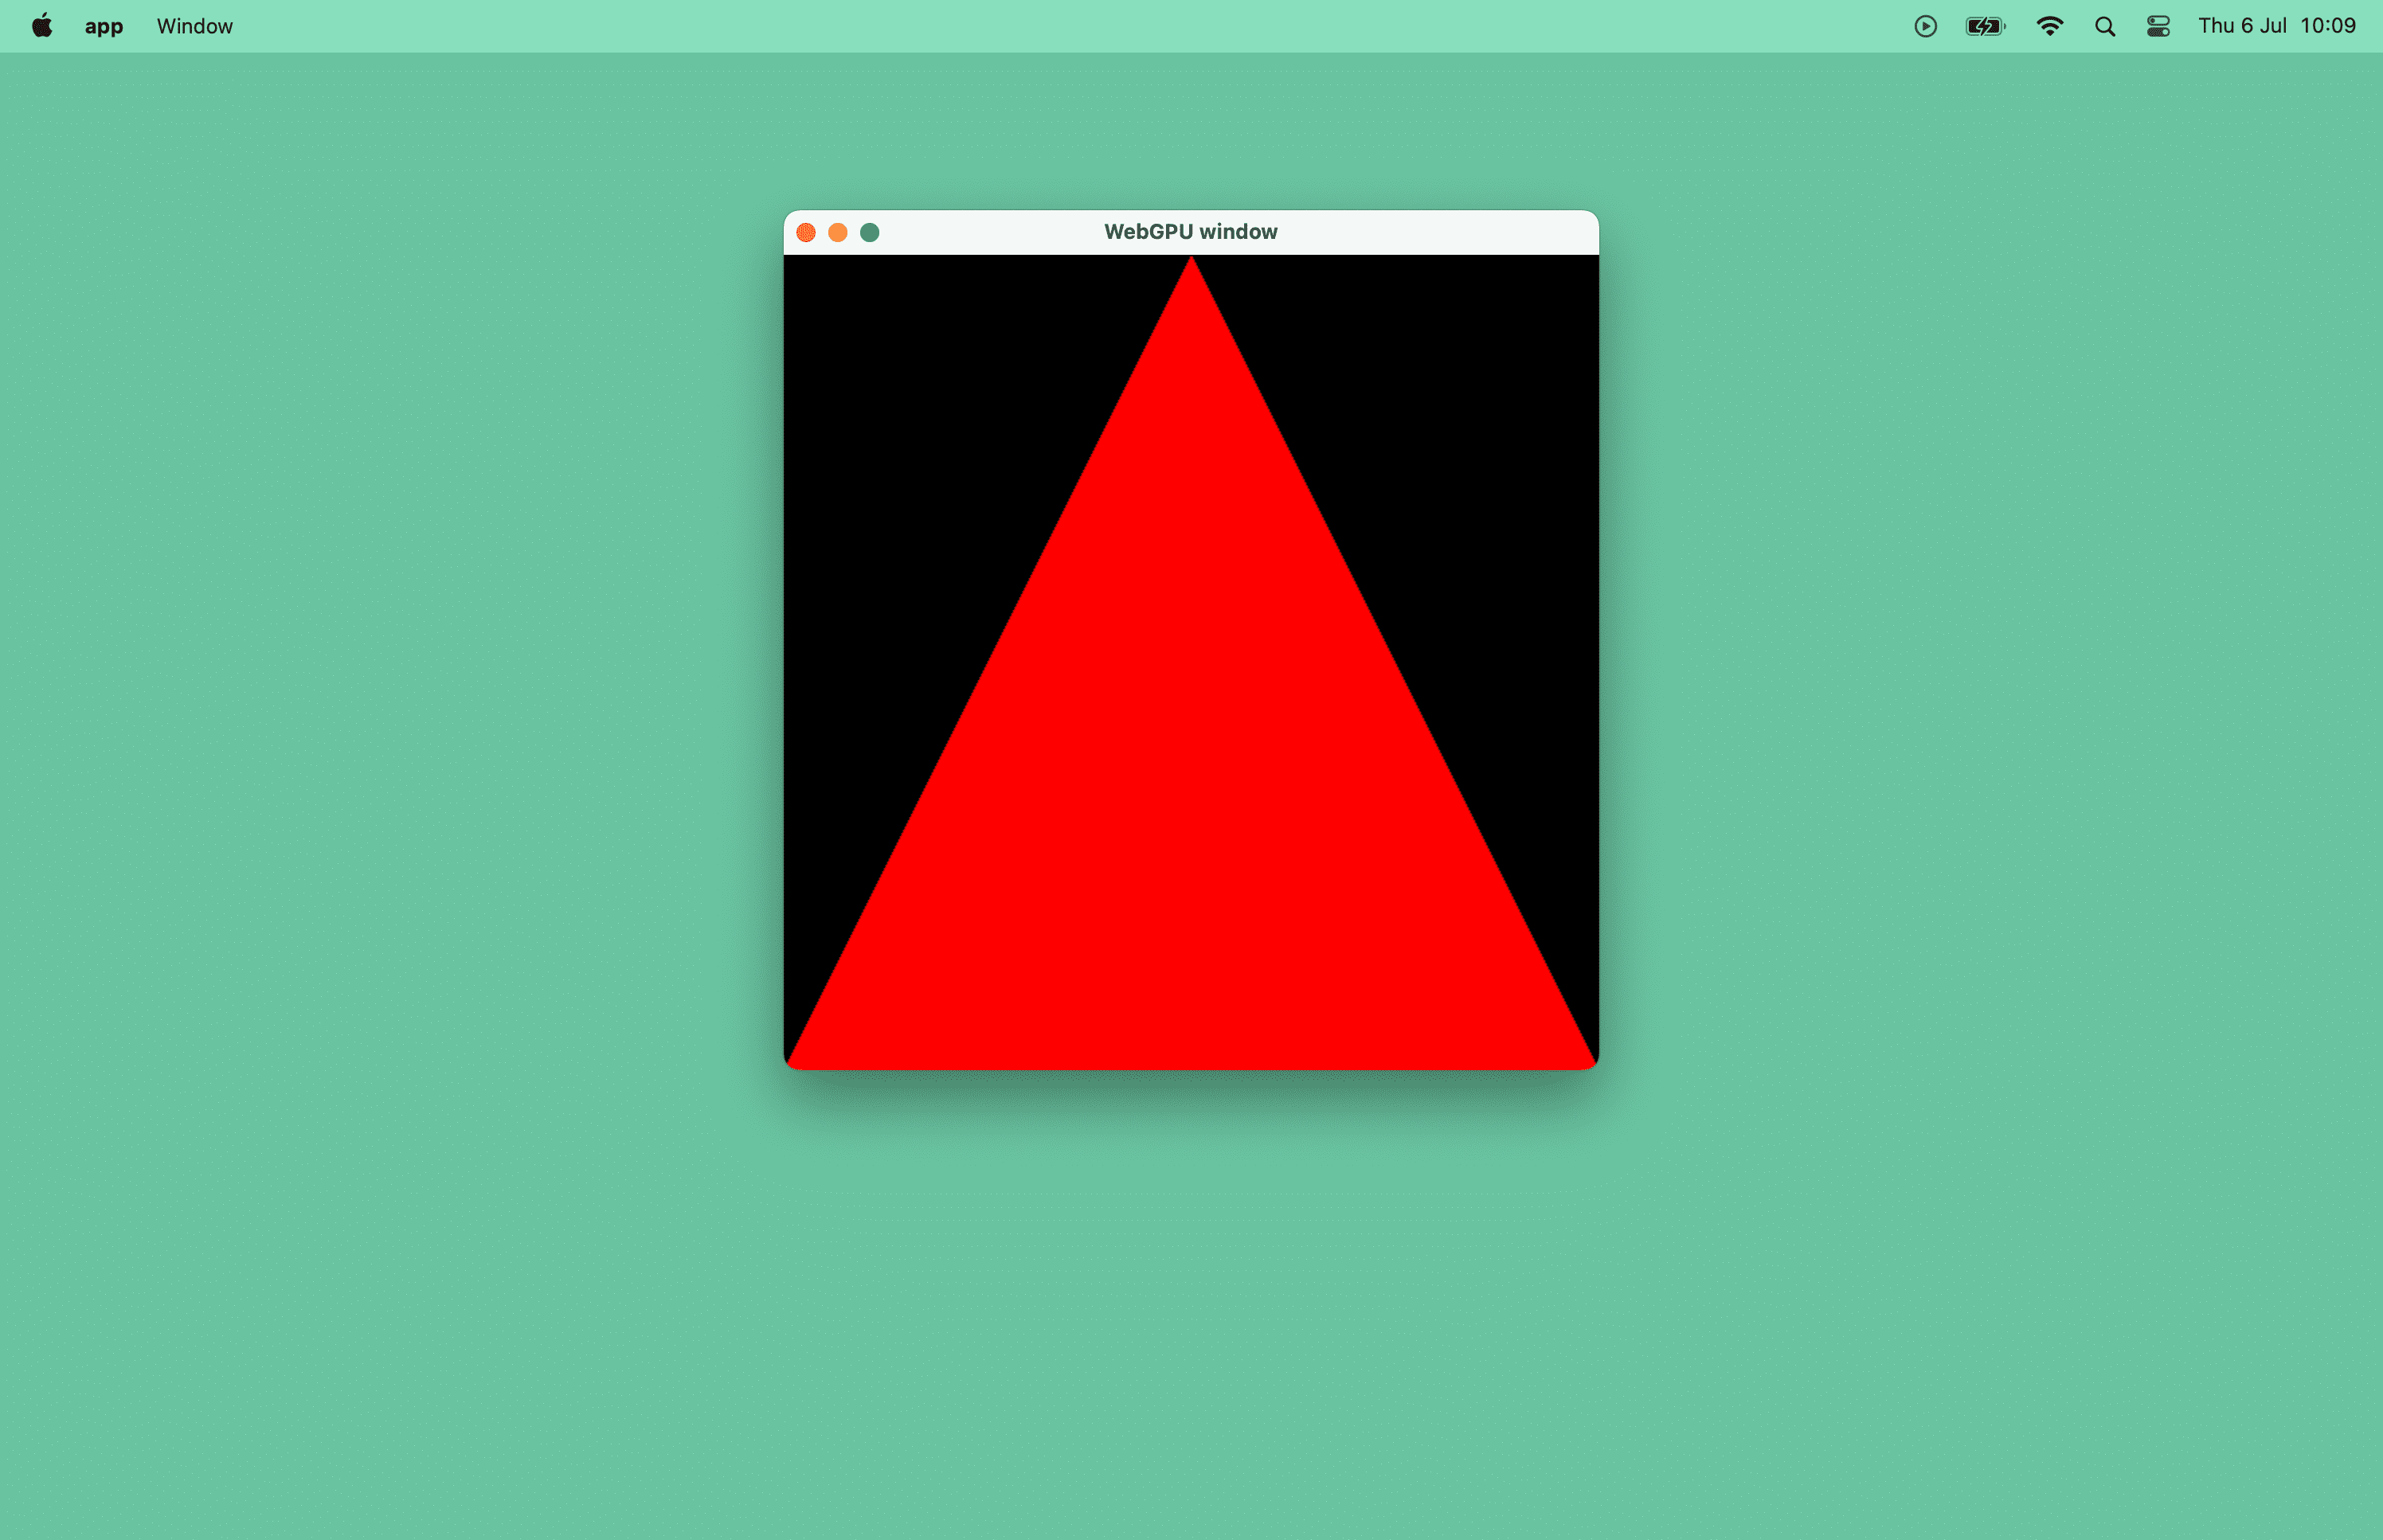 Schermafbeelding van een rode driehoek in een macOS-venster.